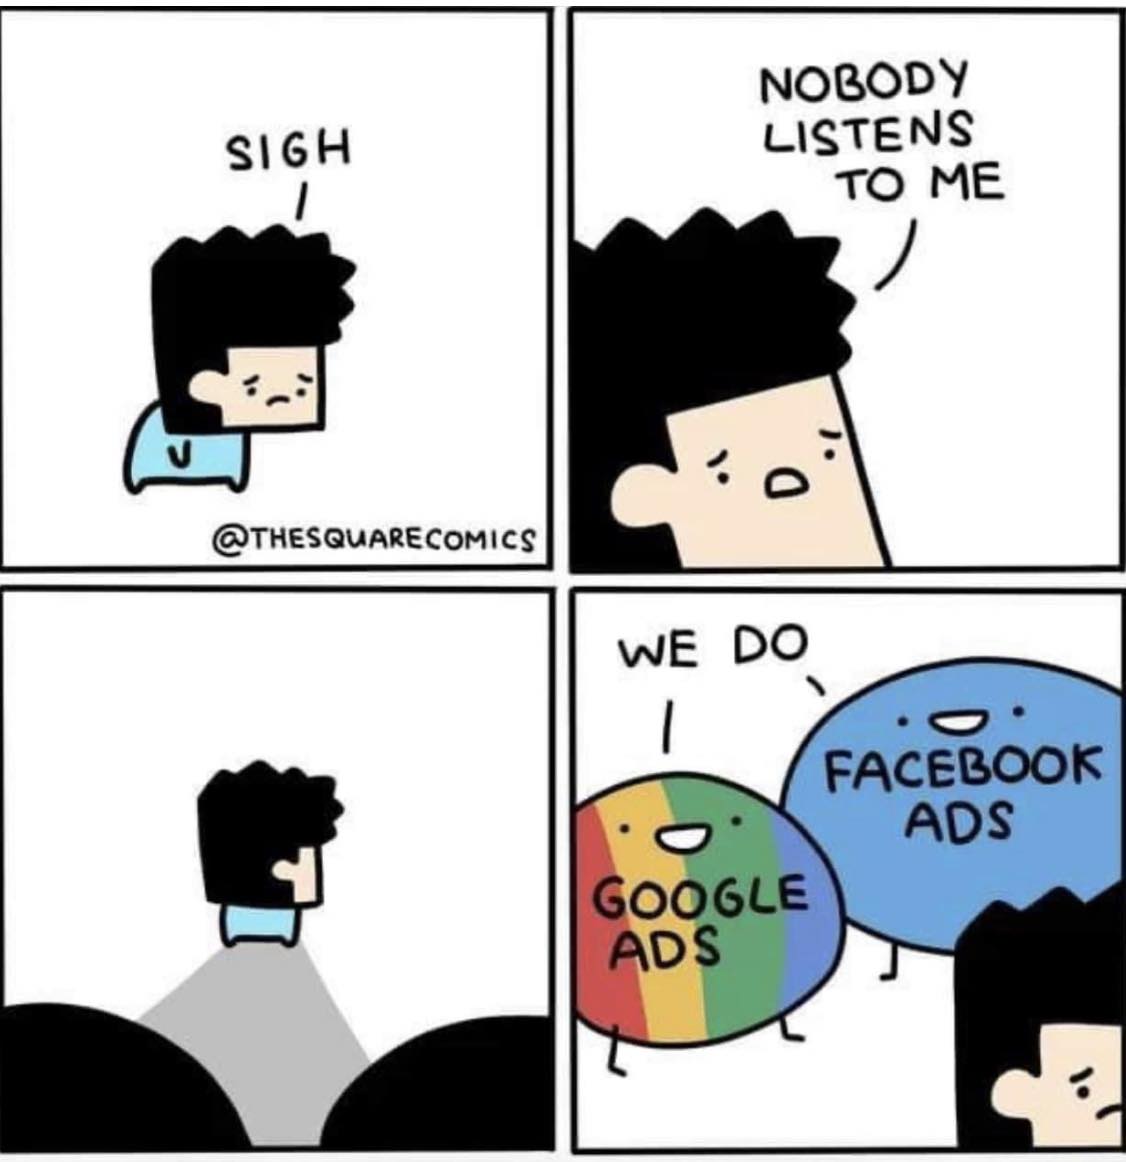 no one listens to me, we do! google ads, facebook ads